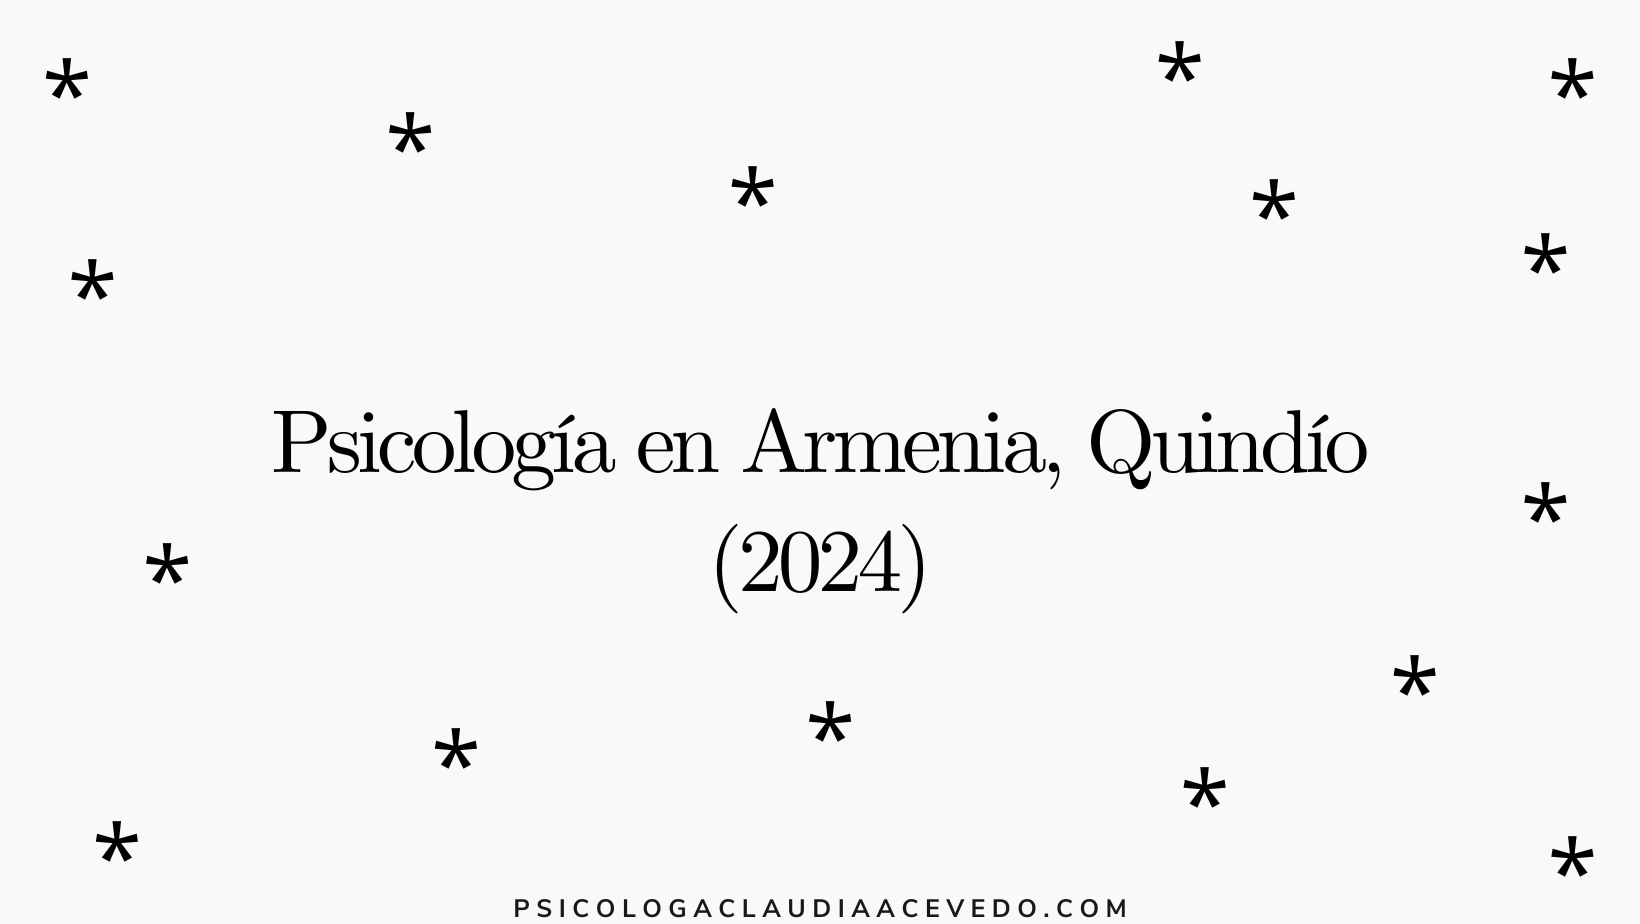 psicologia, armenia, colombia